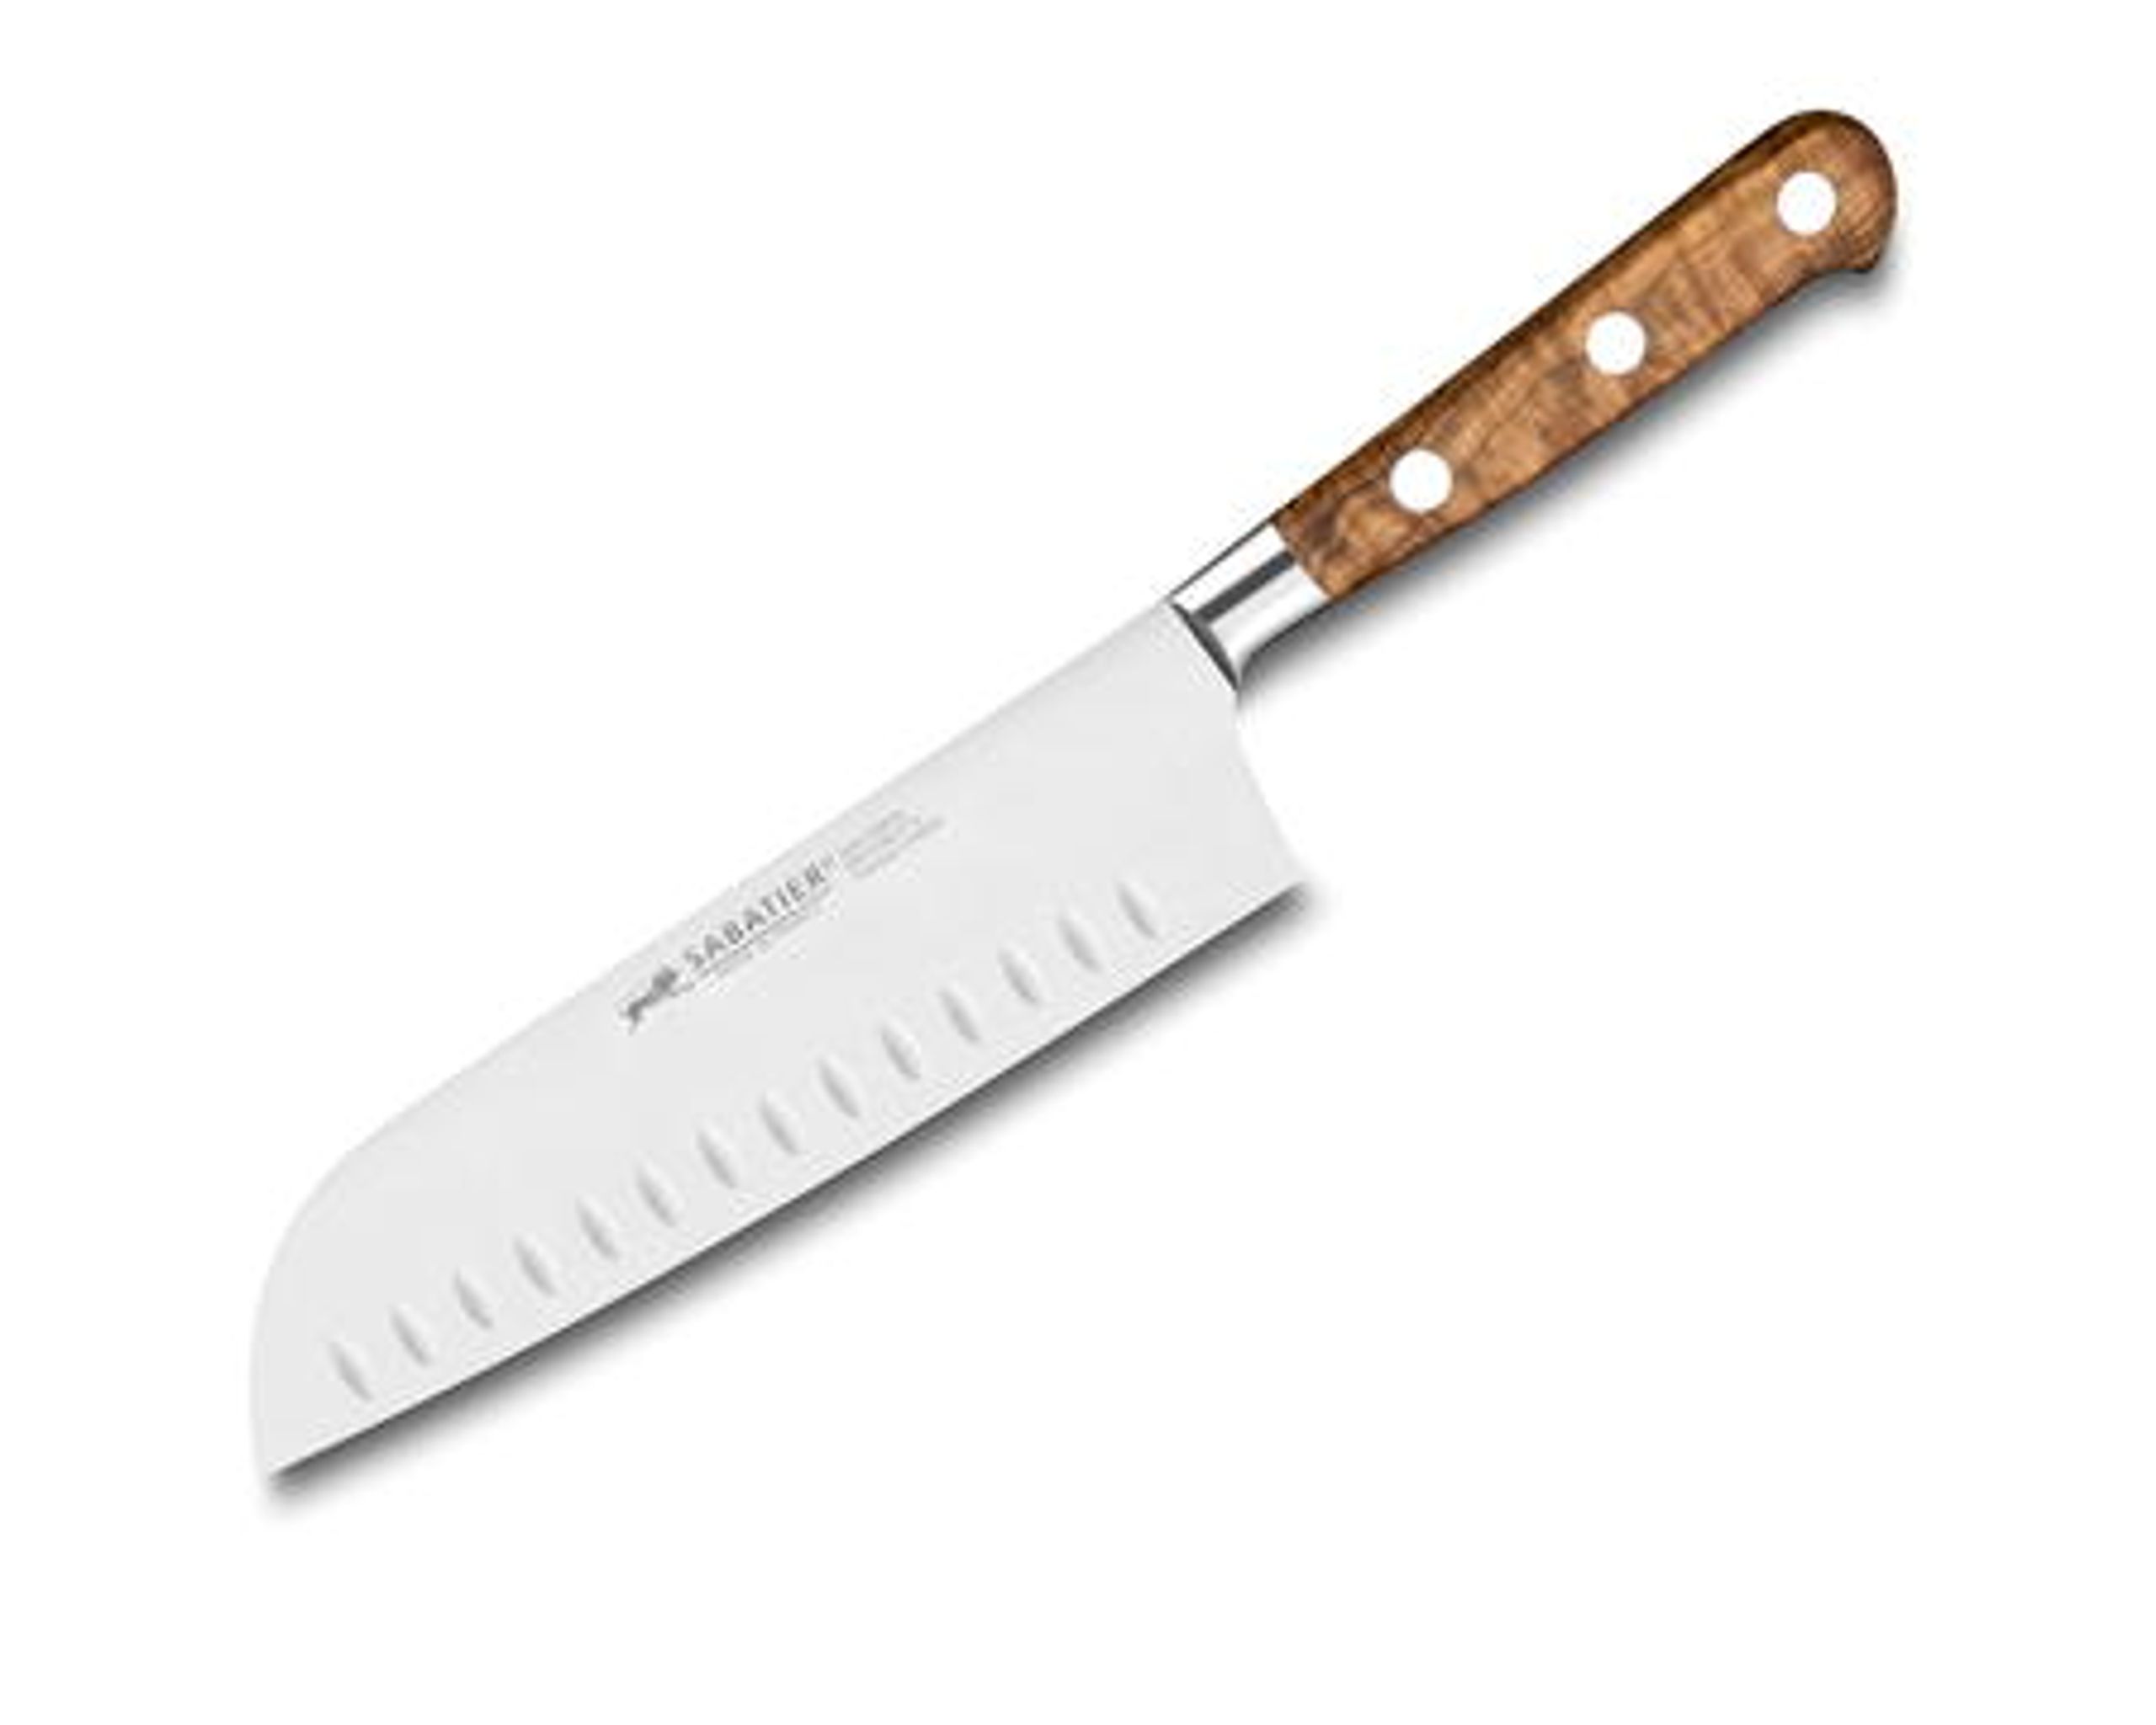 hypotheek elkaar top Lion Sabatier Ideal Provence knife series - Mes -